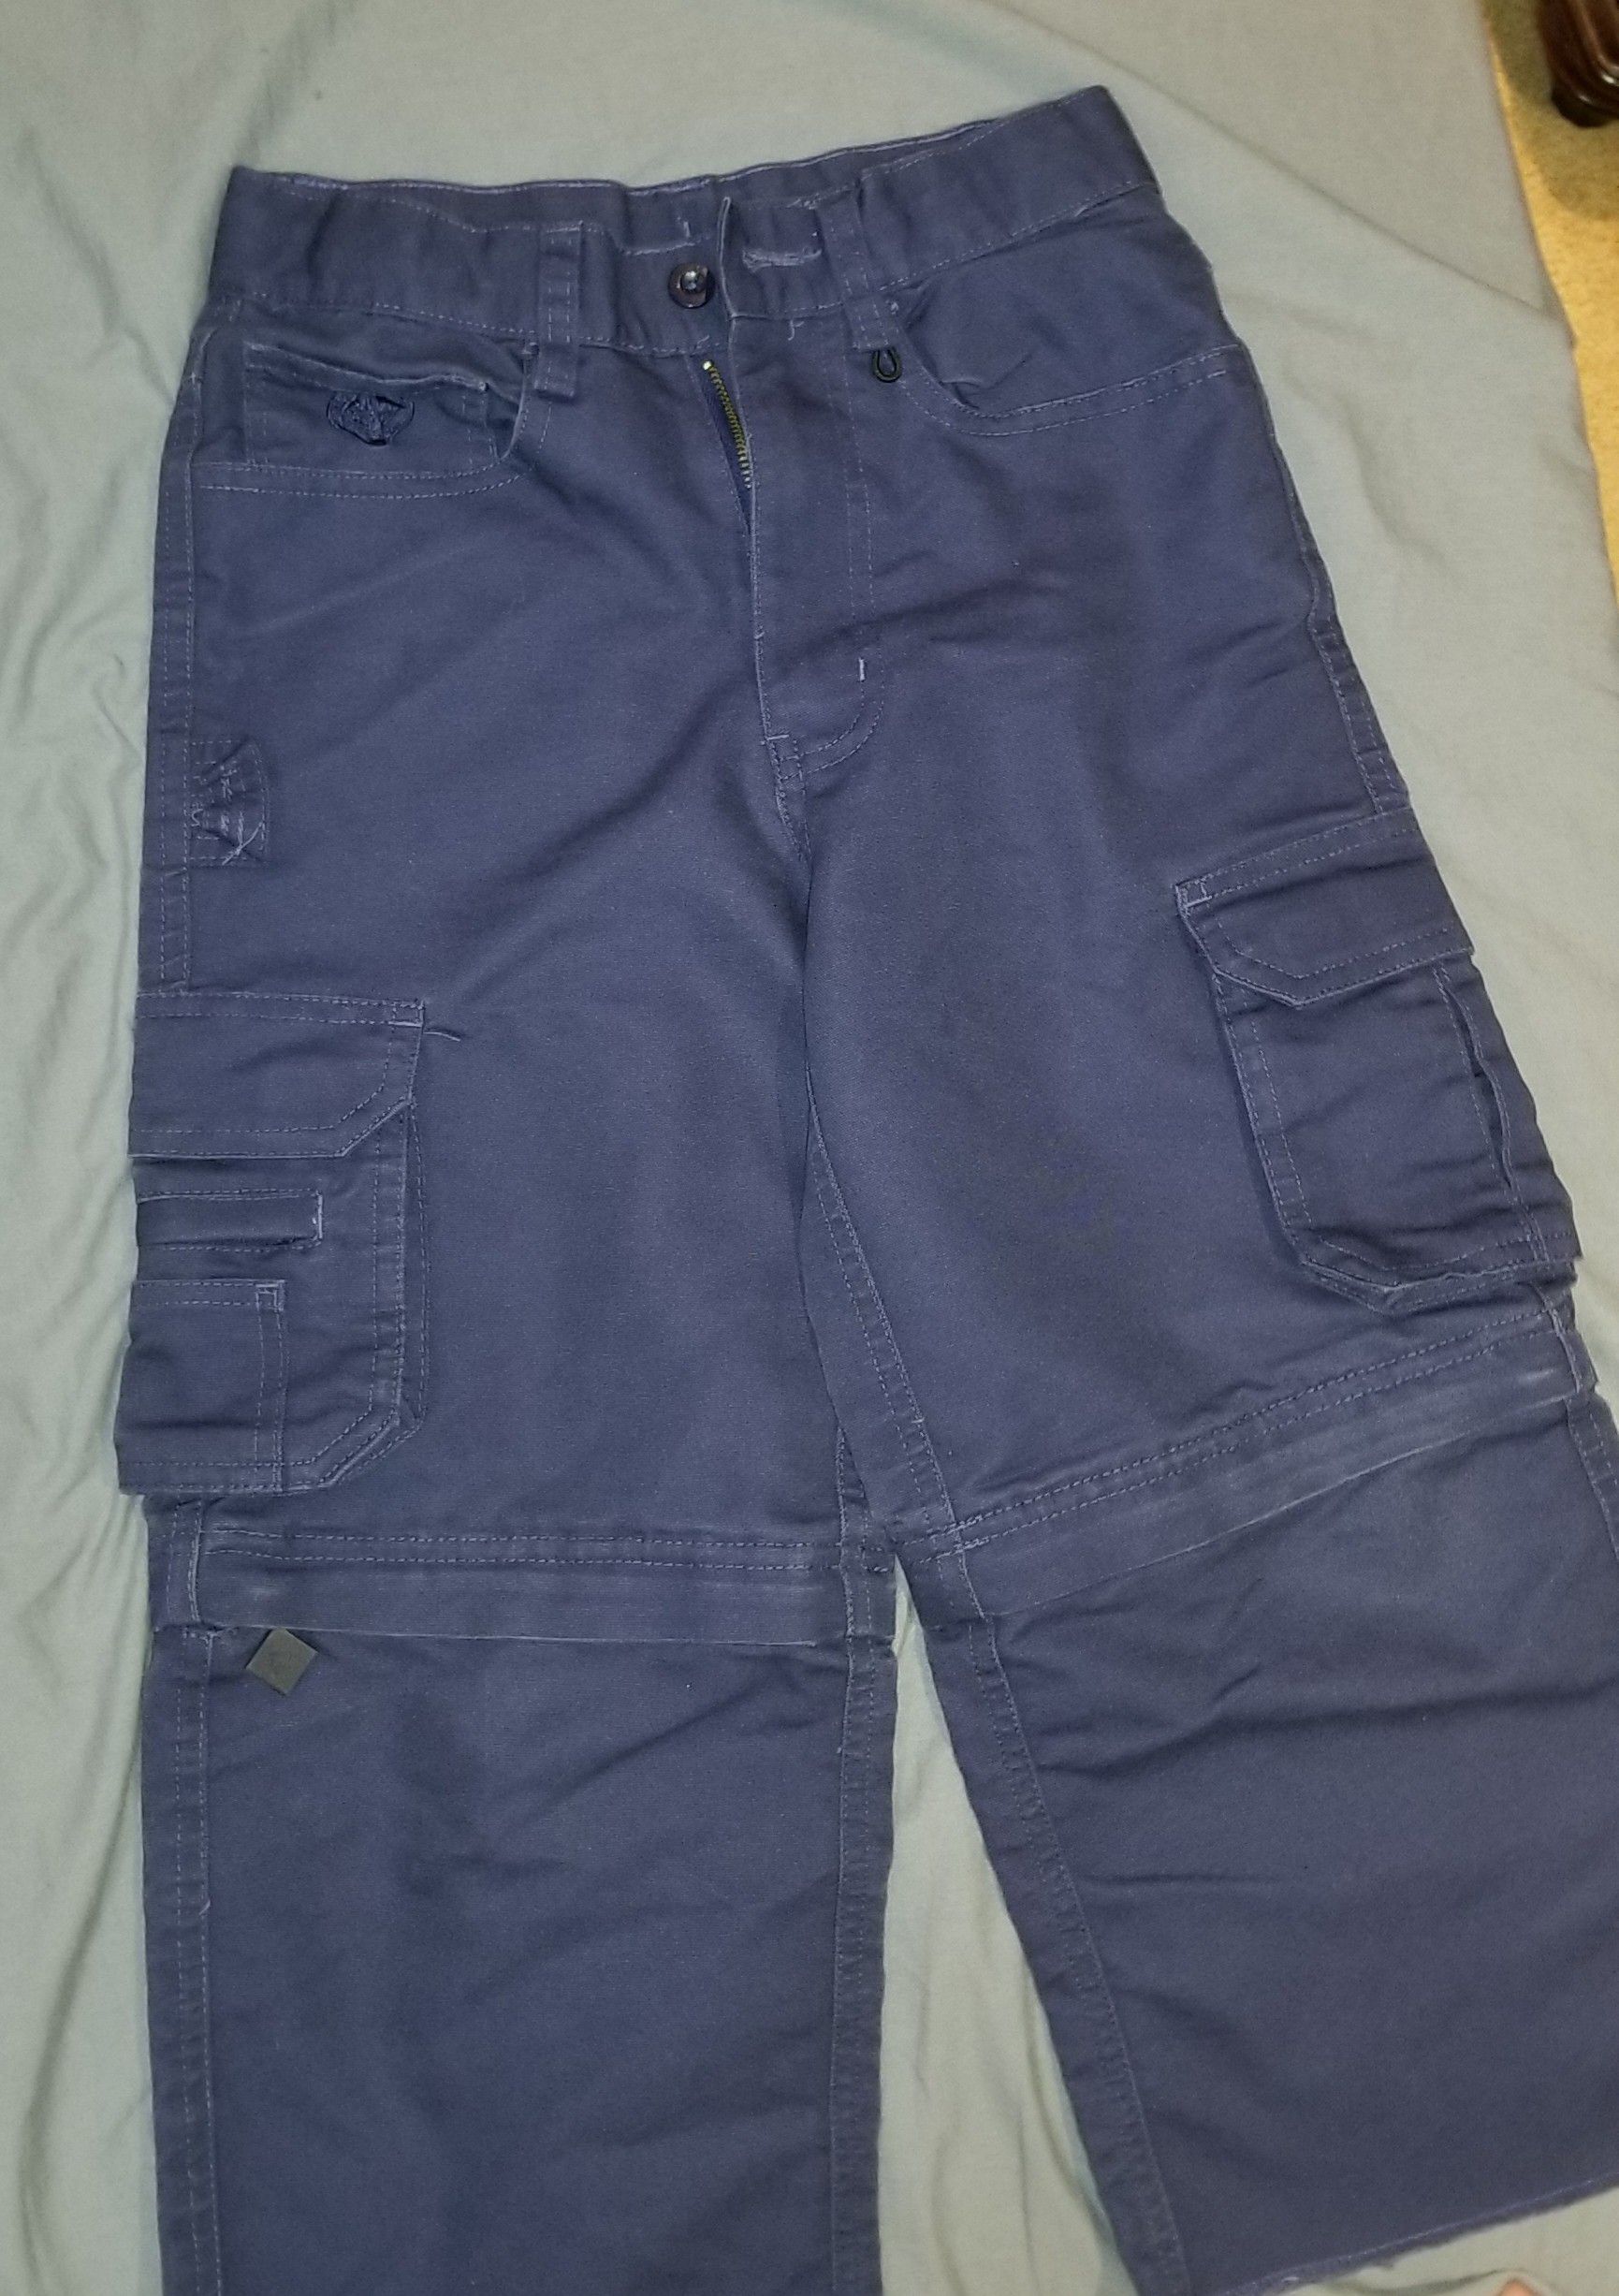 Cub scout pants size 4